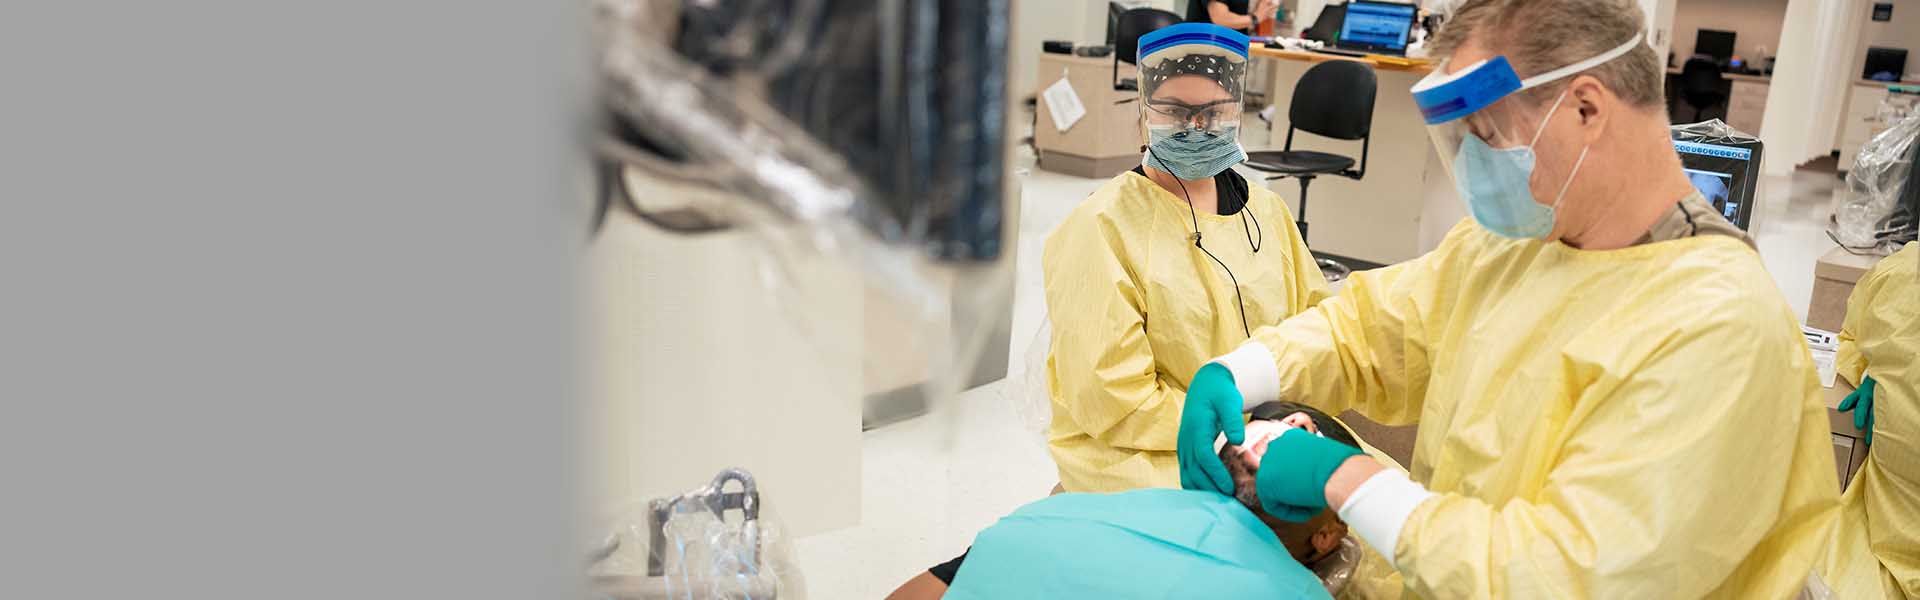 Dental Hygiene students in scrubs clean patients teeth